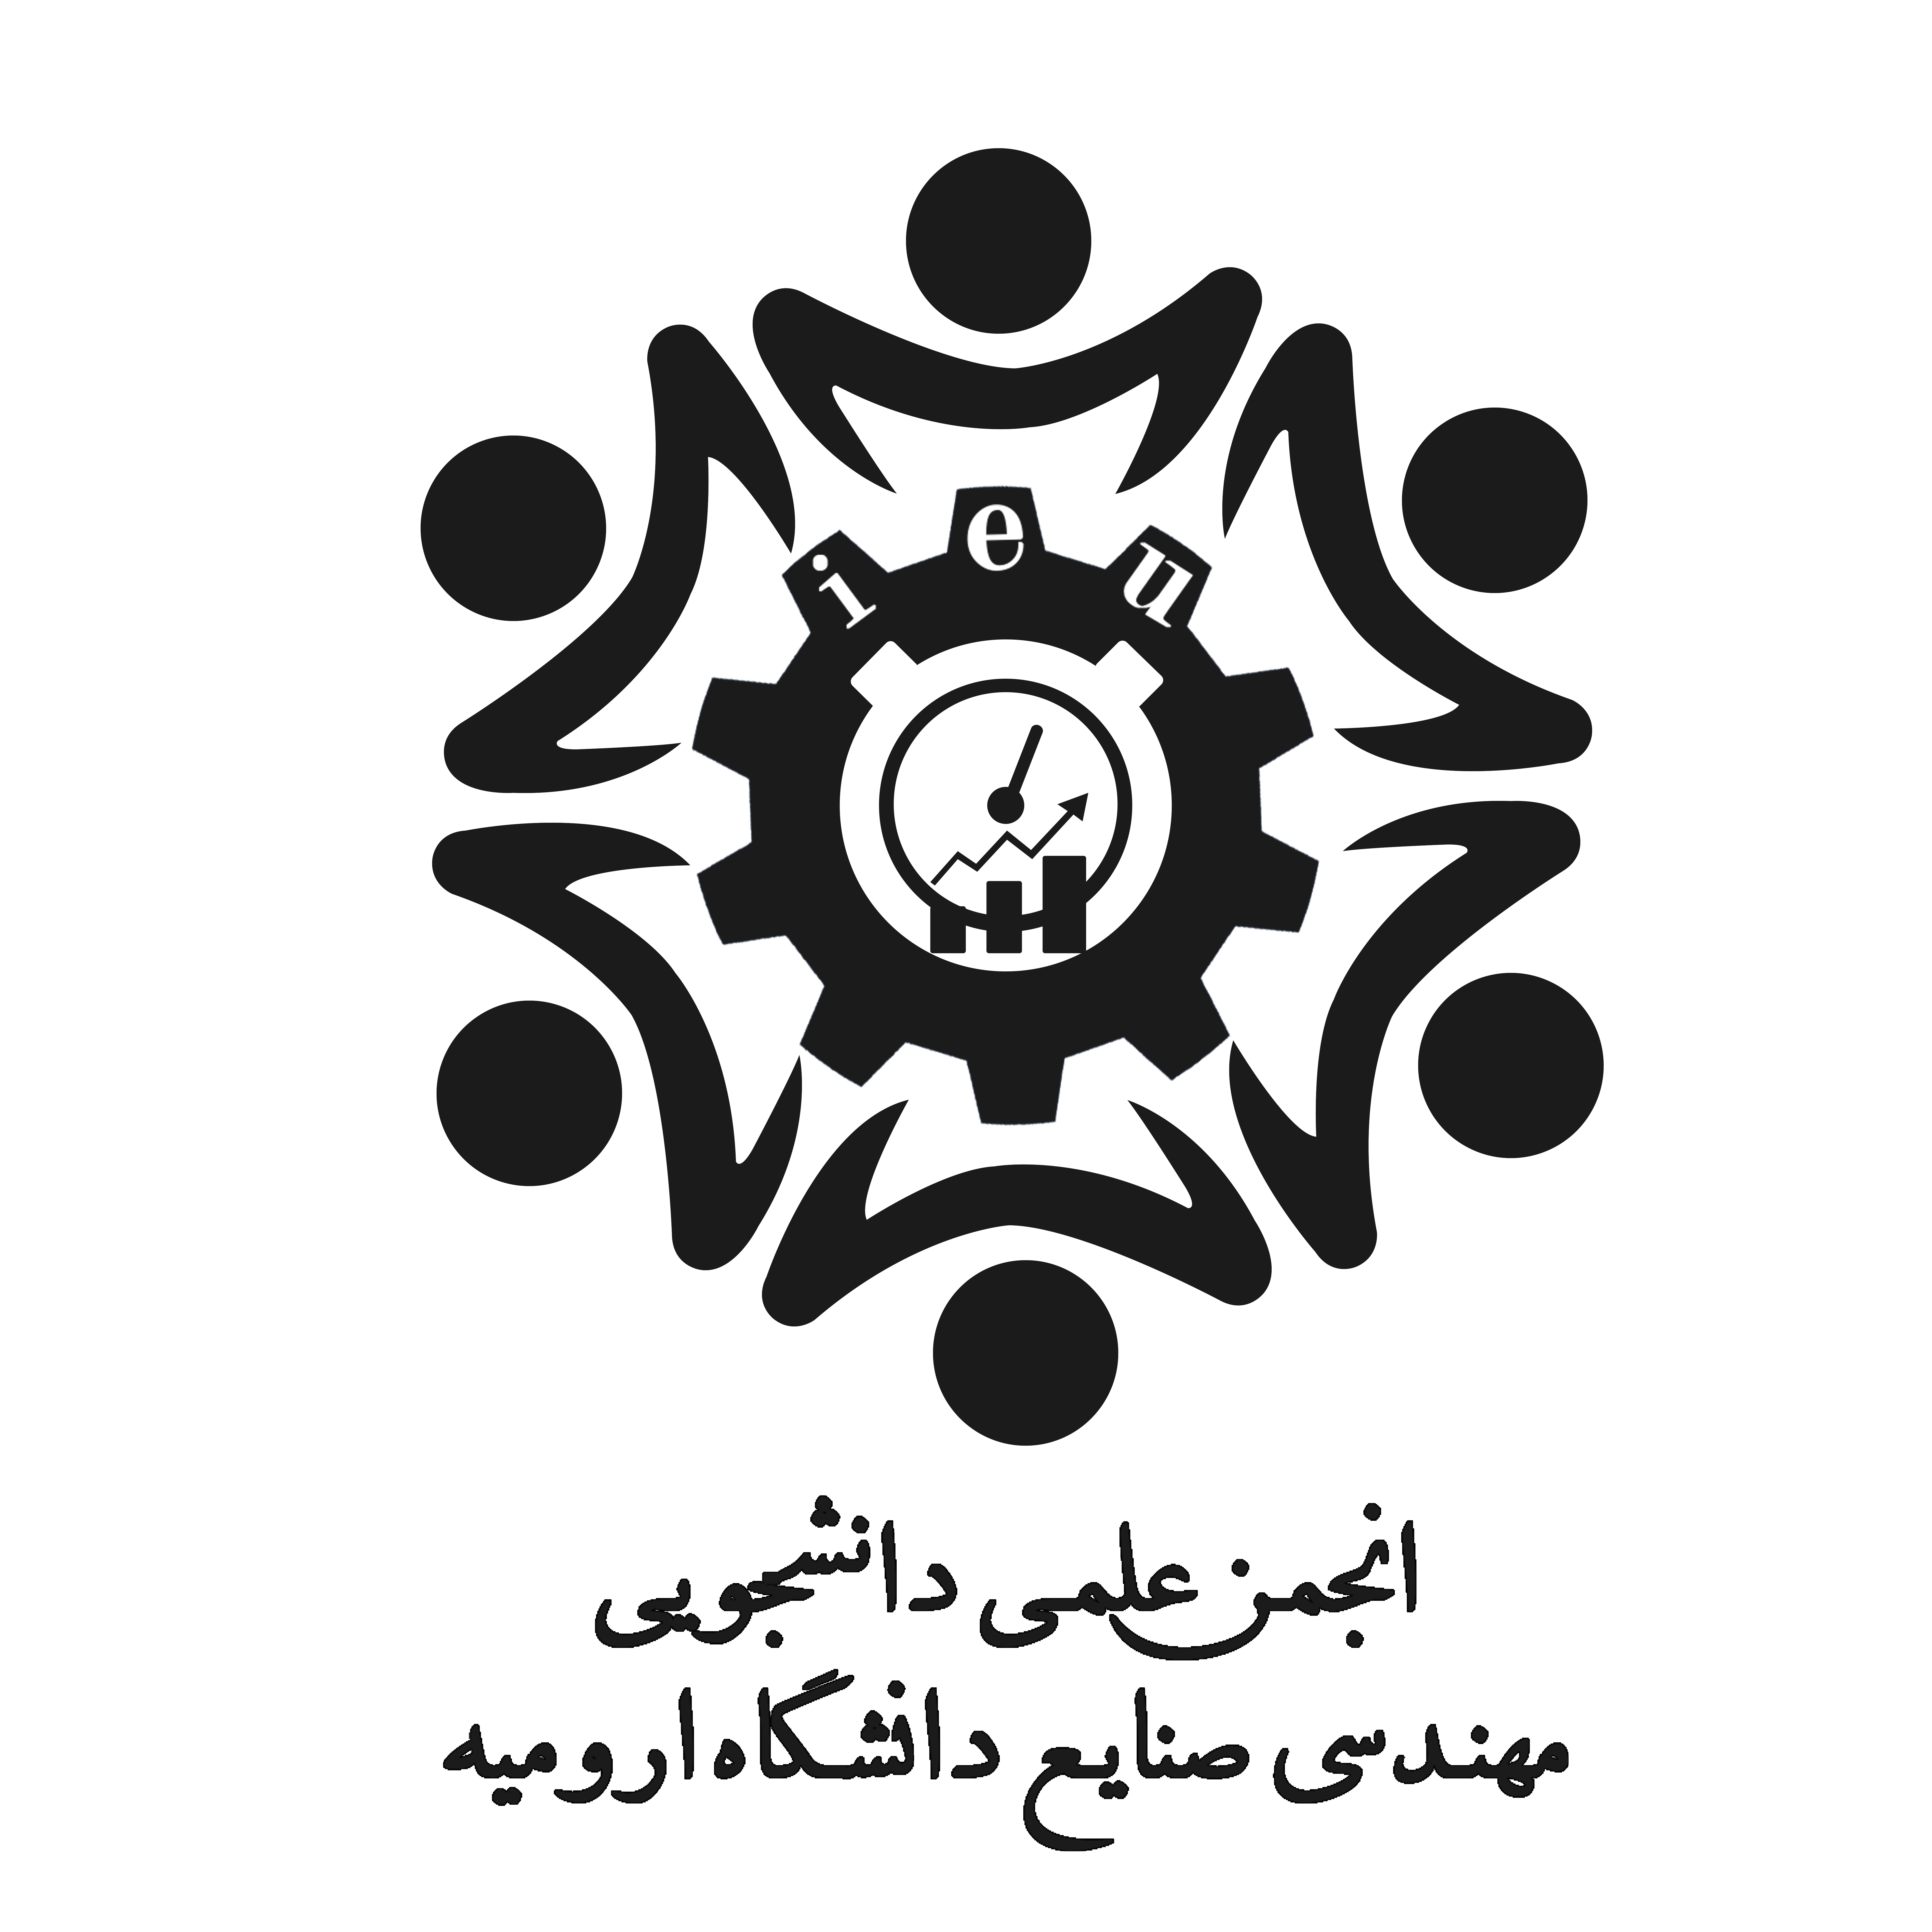 انجمن علمی دانشجویی مهندسی صنایع دانشگاه ارومیه